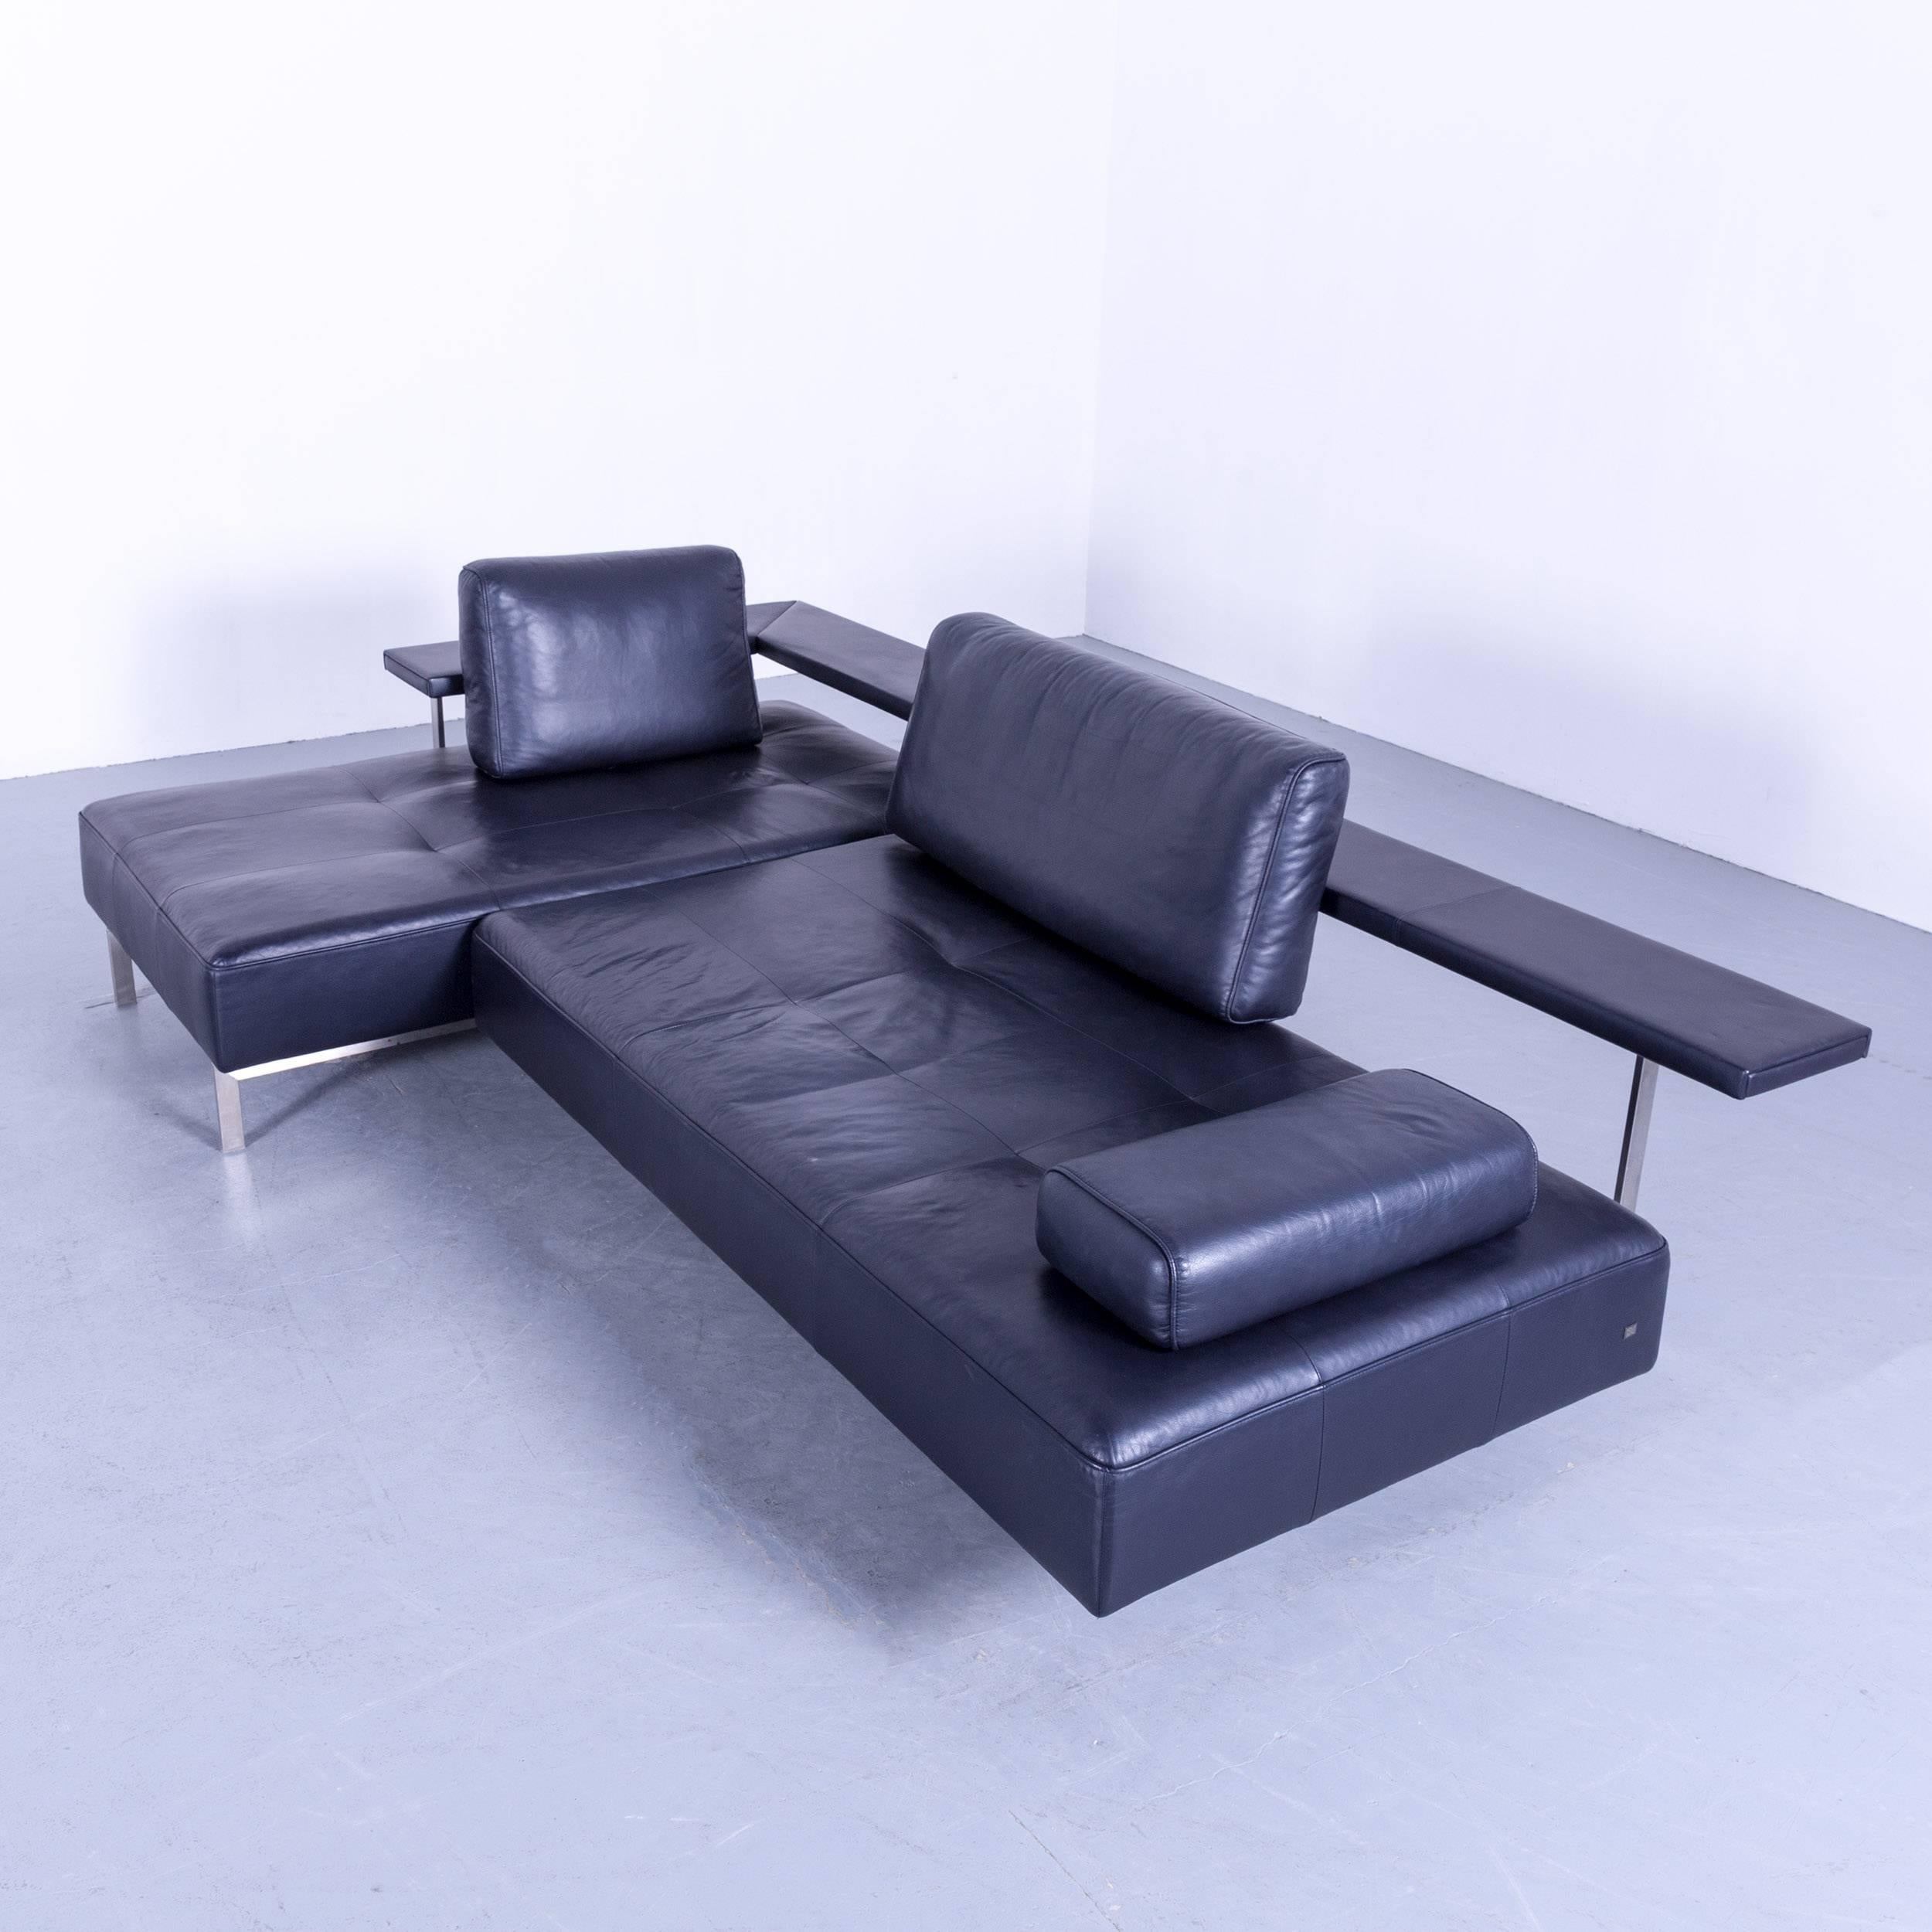 German Rolf Benz Dono Designer Corner Sofa Leather Navy Blue Dark Blue Sleeping Couch